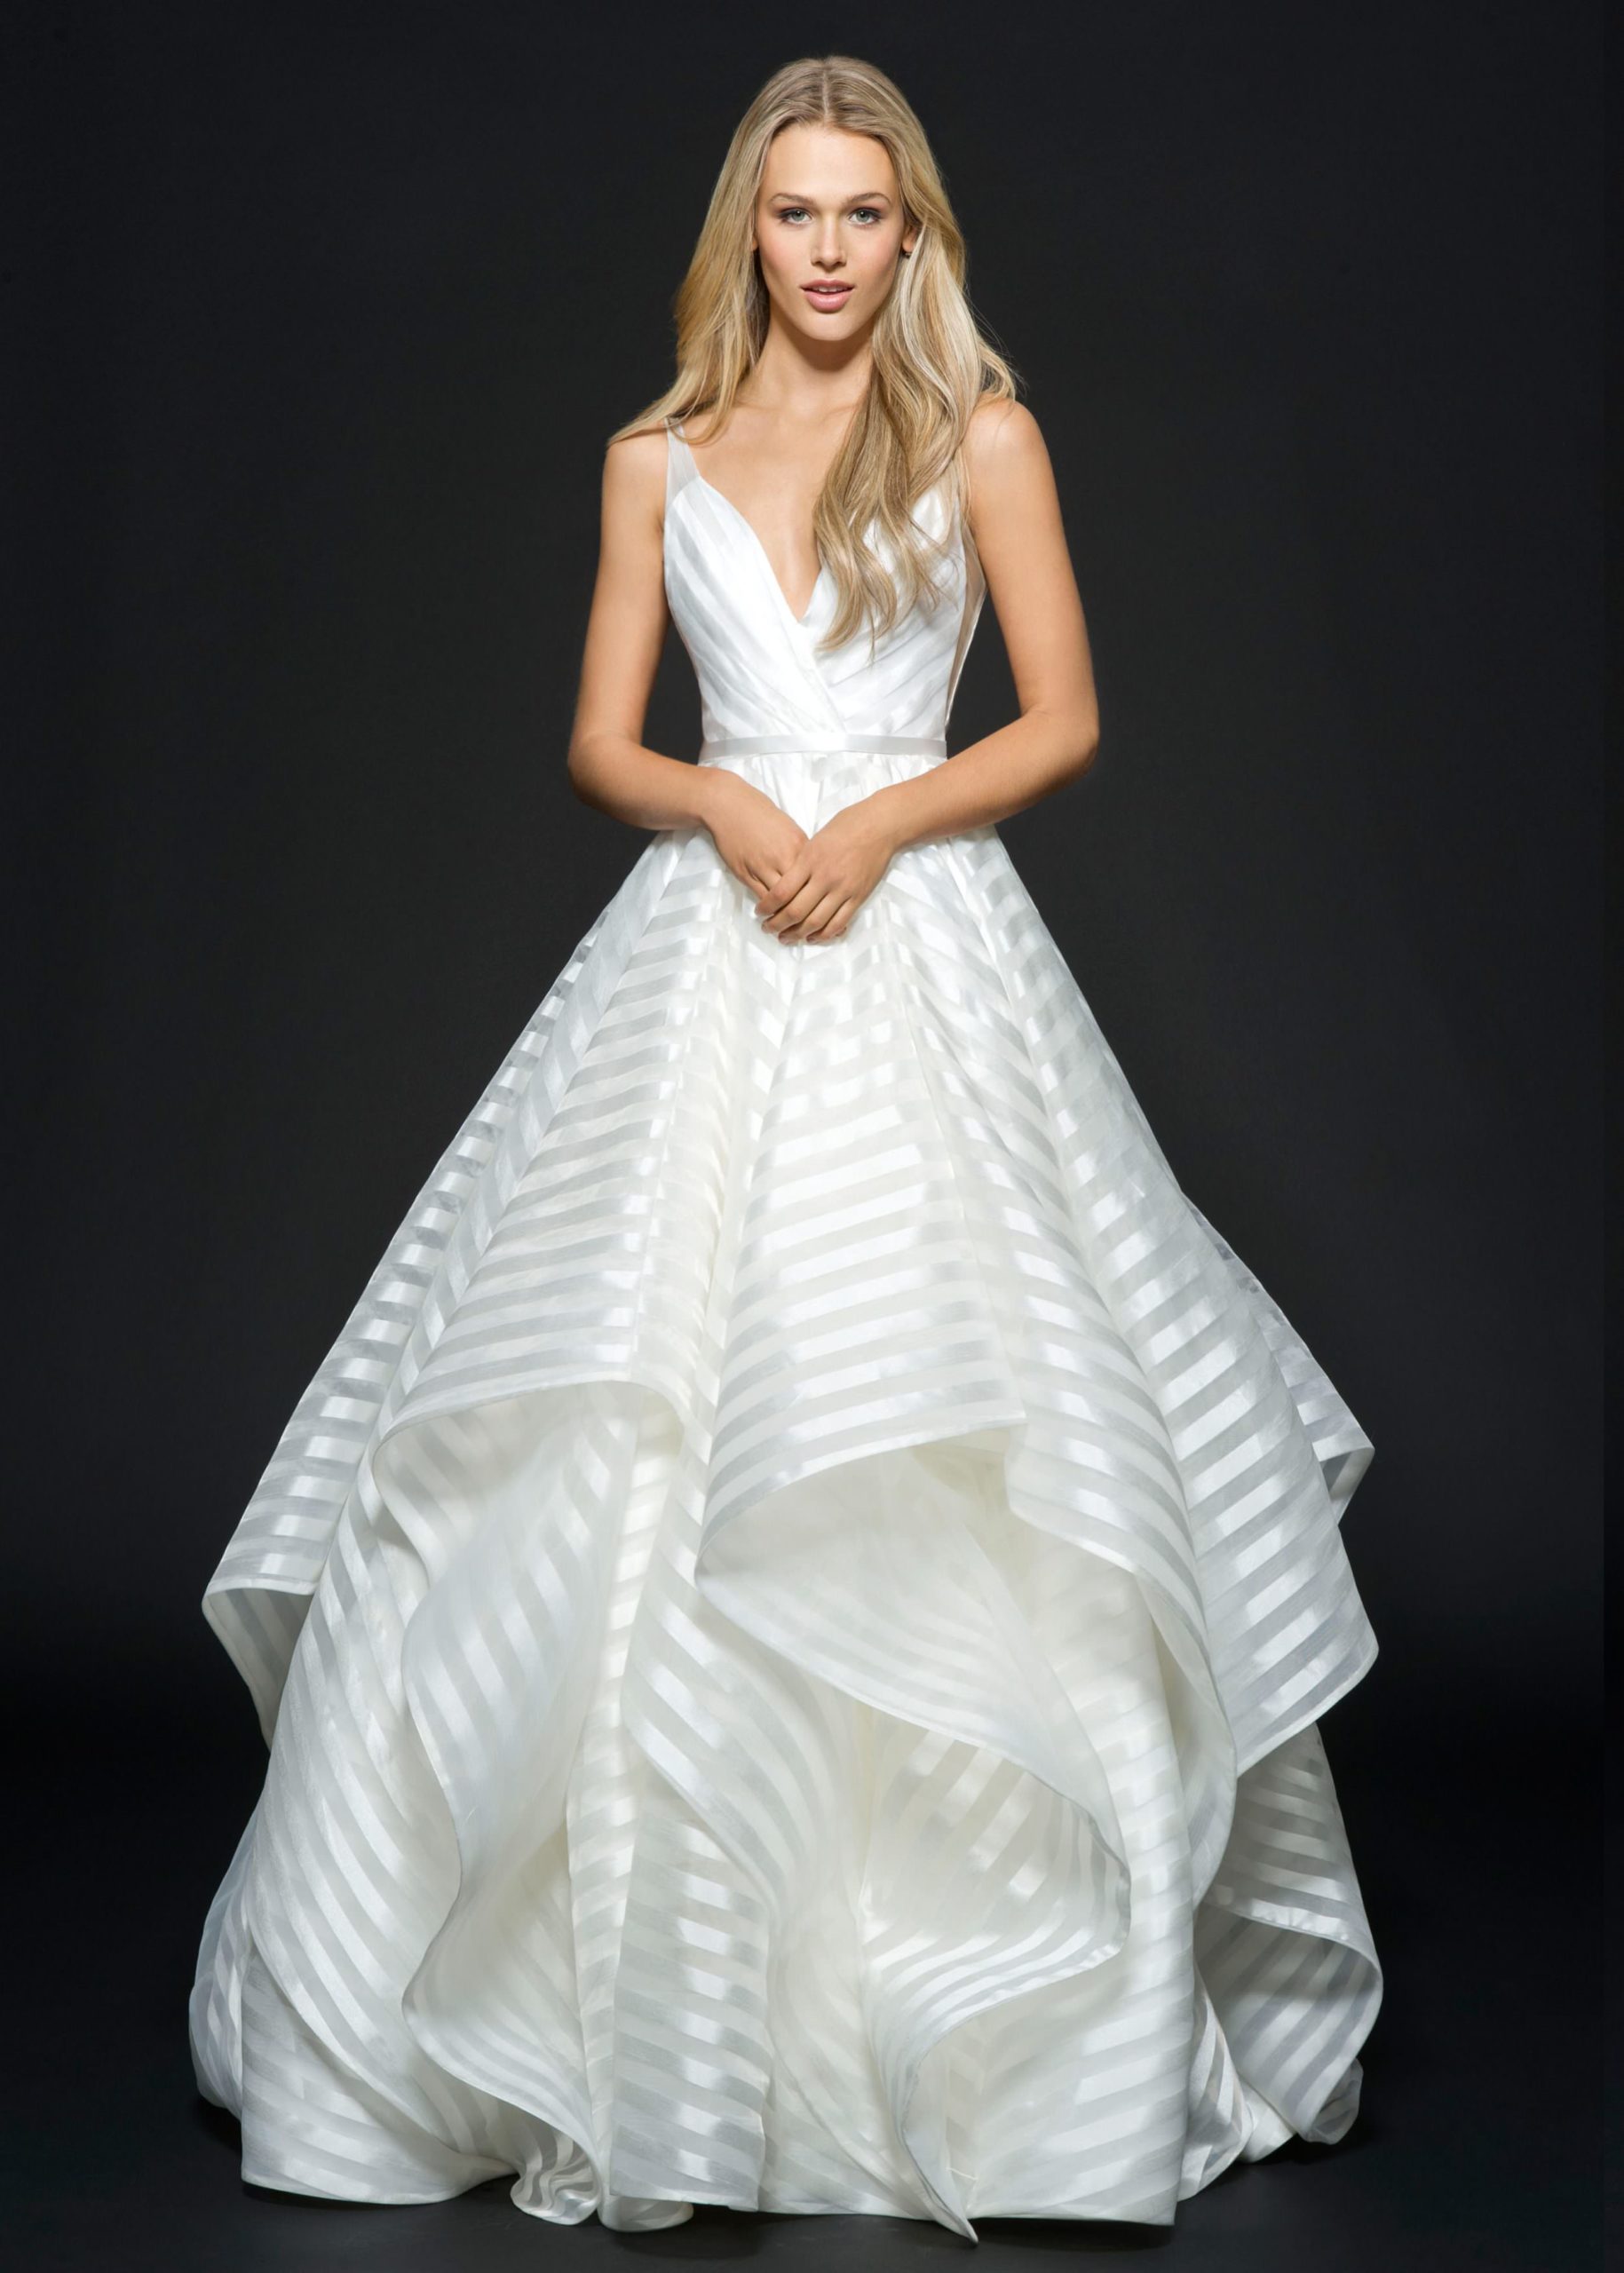 Decklyn 6661 Wedding Dress - Wedding Atelier NYC Hayley Paige